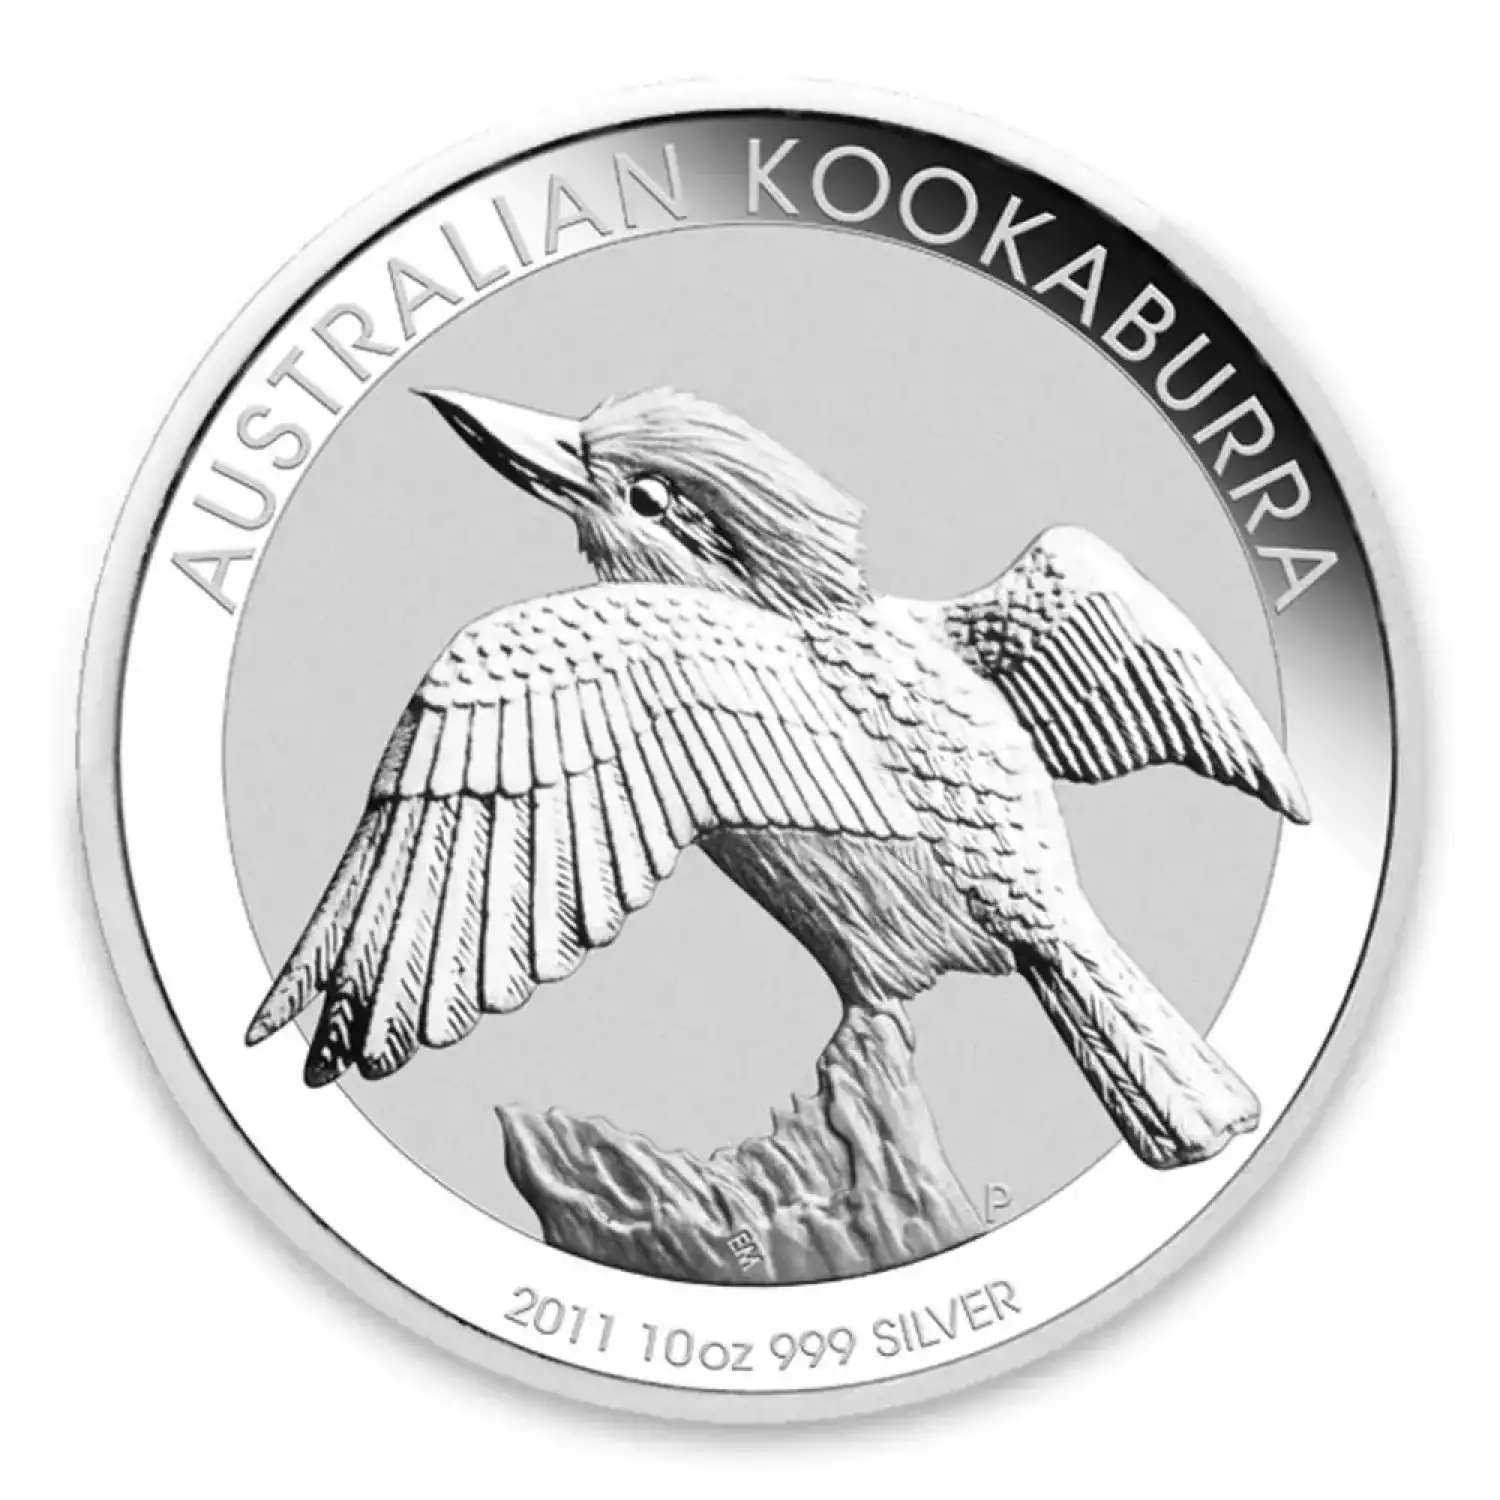 2011 10oz Australian Perth Mint Silver Kookaburra (2)